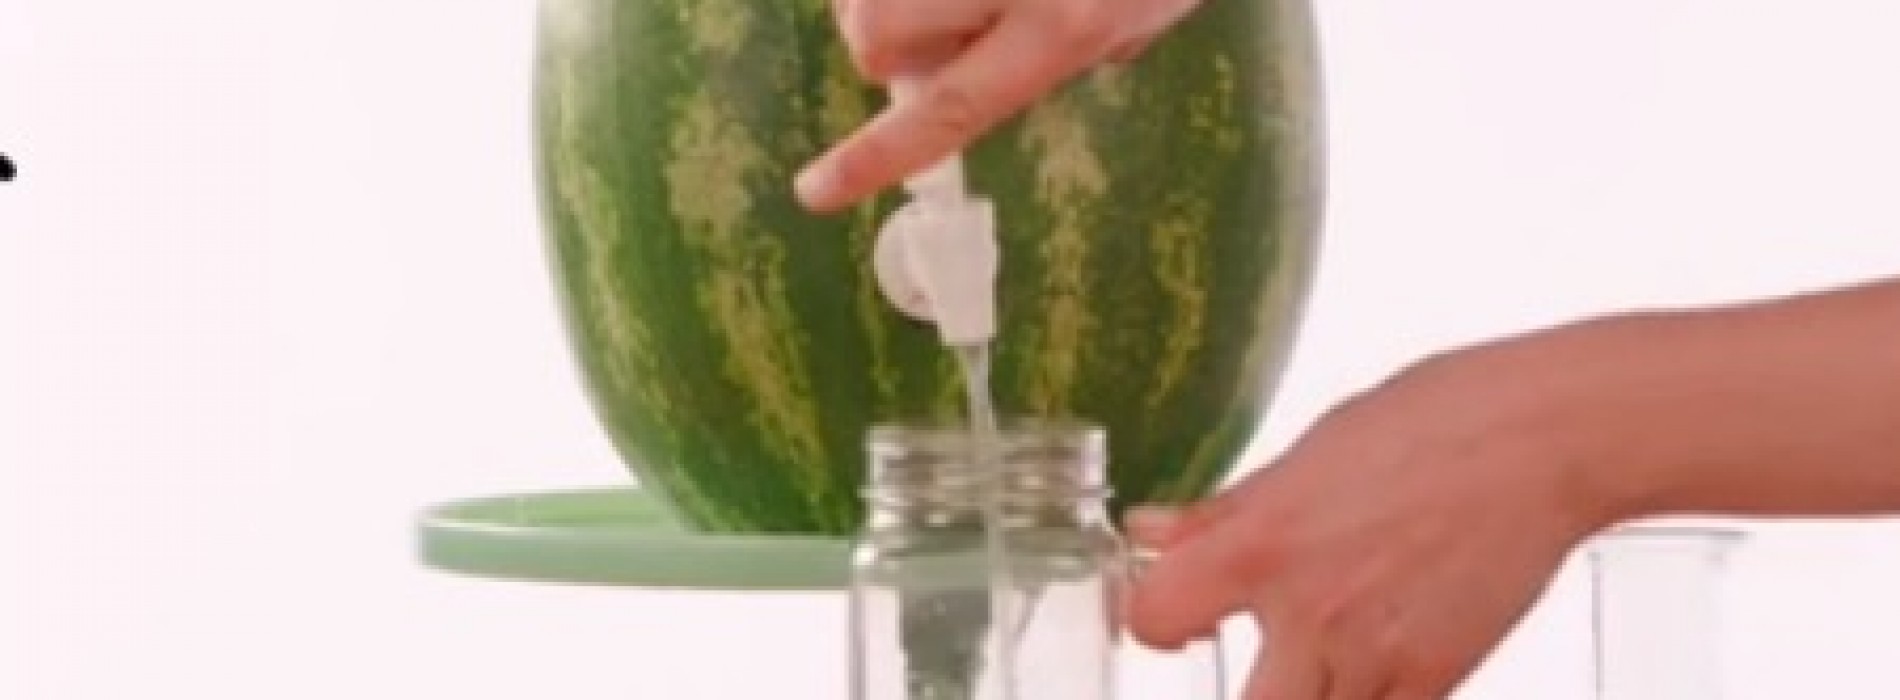 Maak je tuinfeestje nog beter met deze watermeloentap! Geniaal en verbazingwekkend makkelijk te maken!